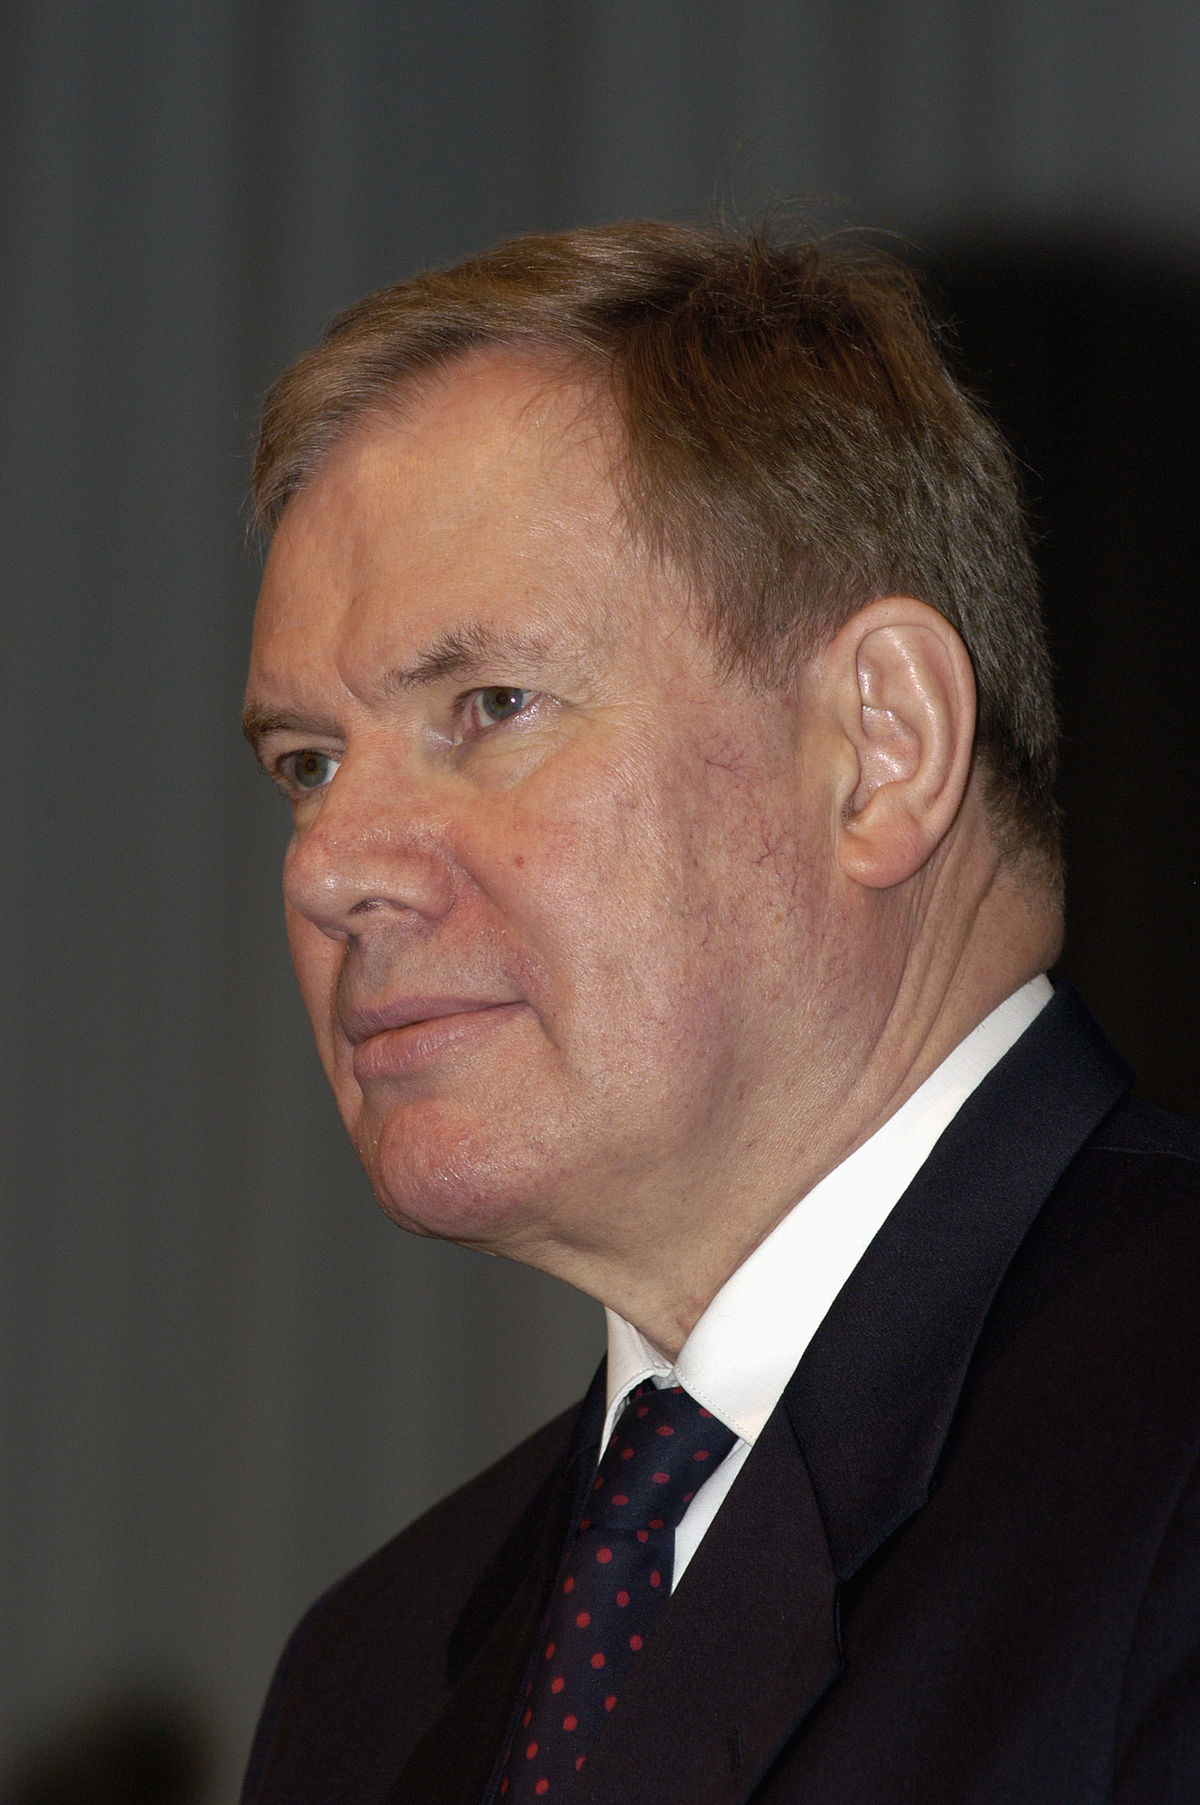 Paavo Lipponen - Wikipedia